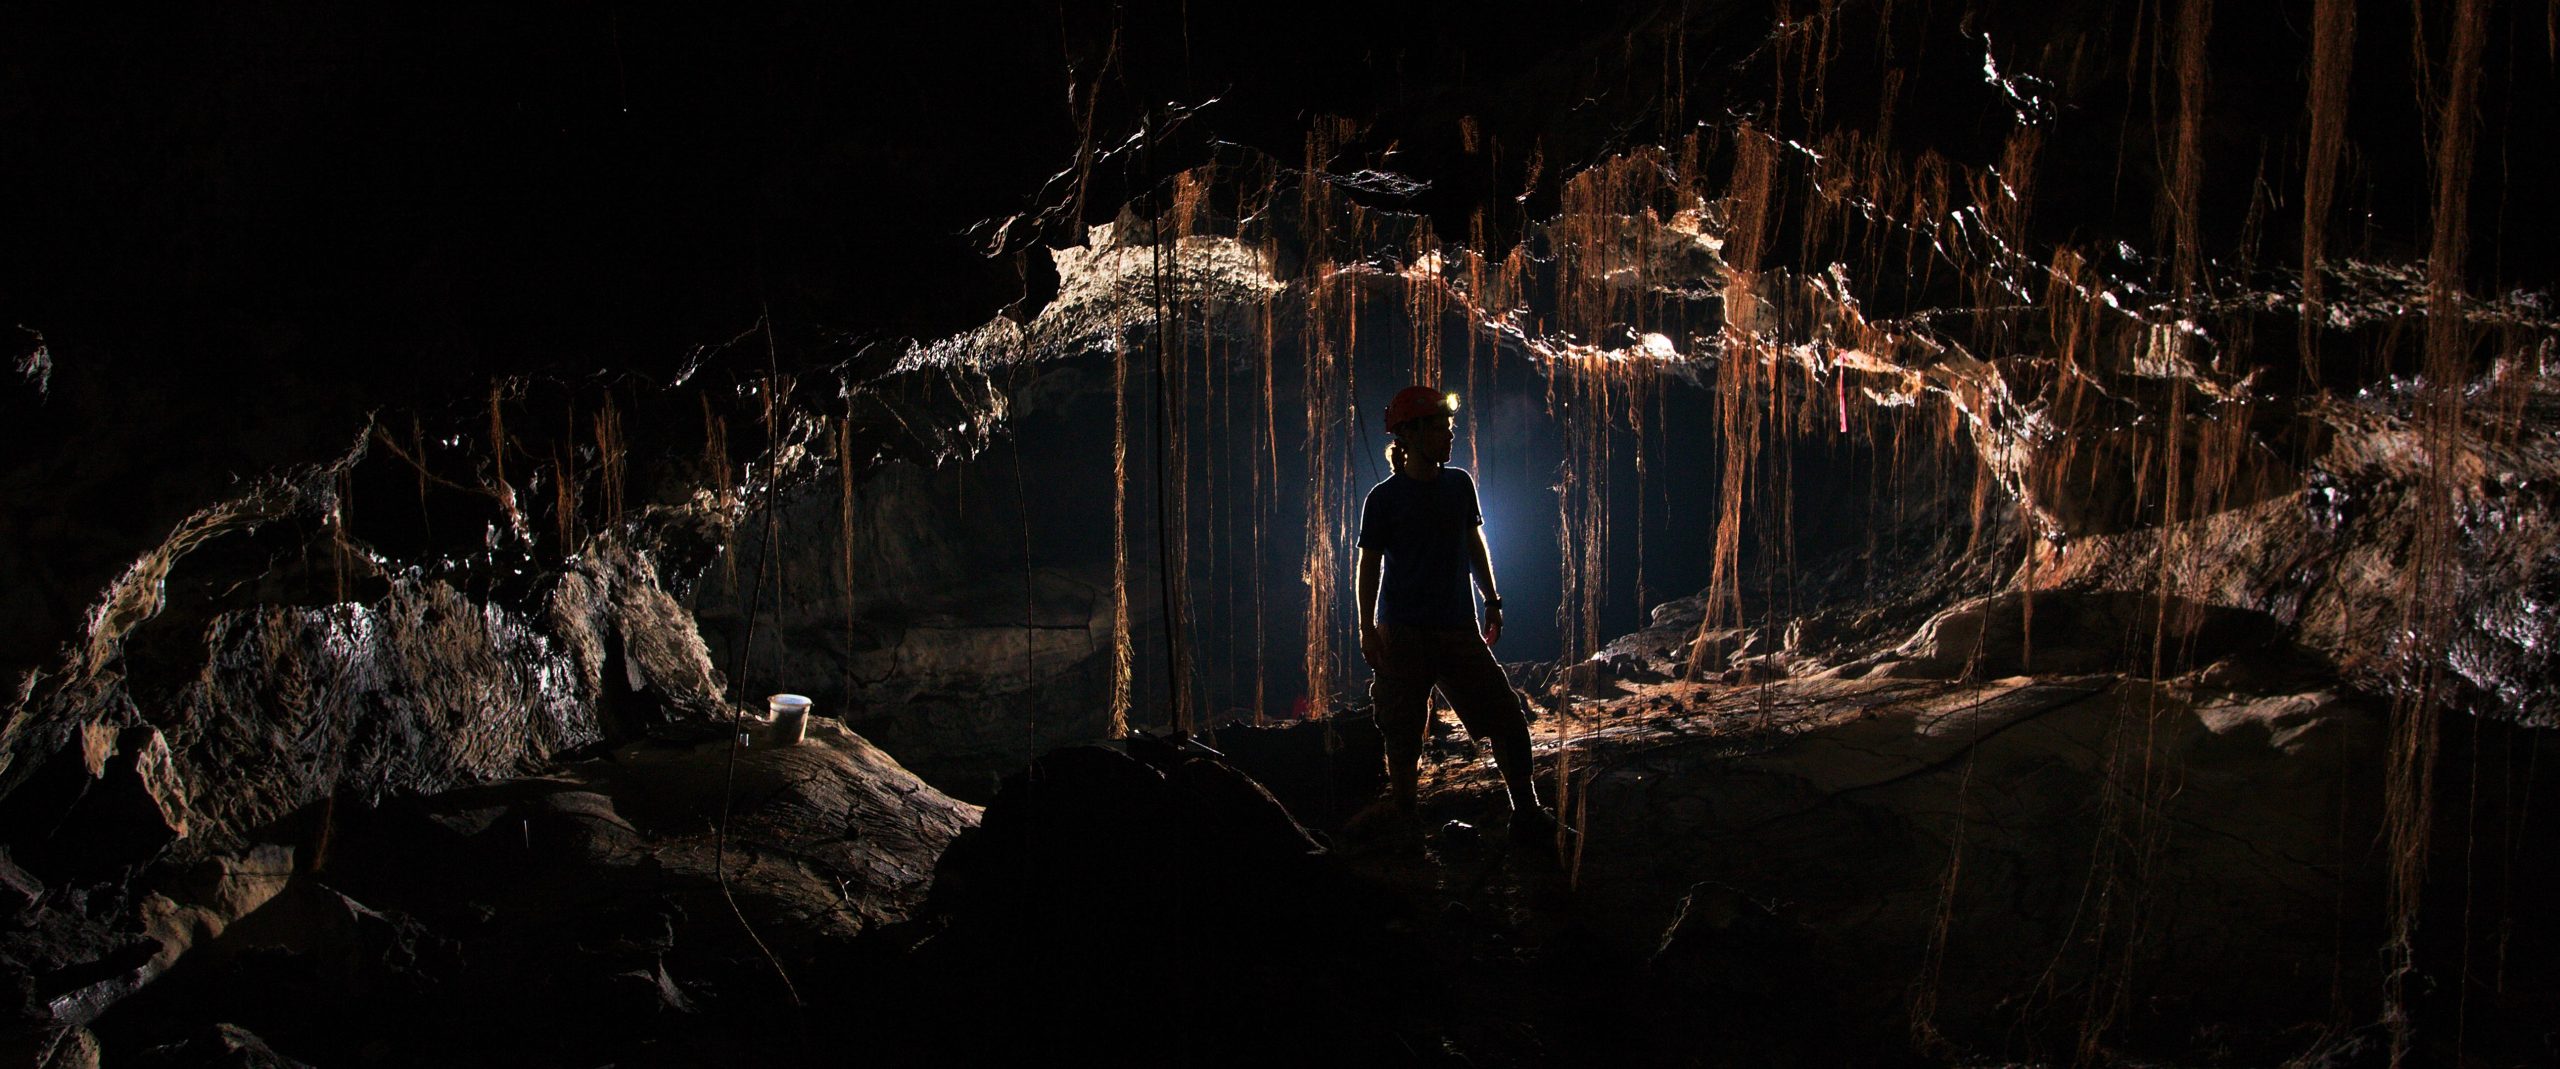 古代微生物 暗物质  夏威夷熔岩洞中发现数千种未知细菌